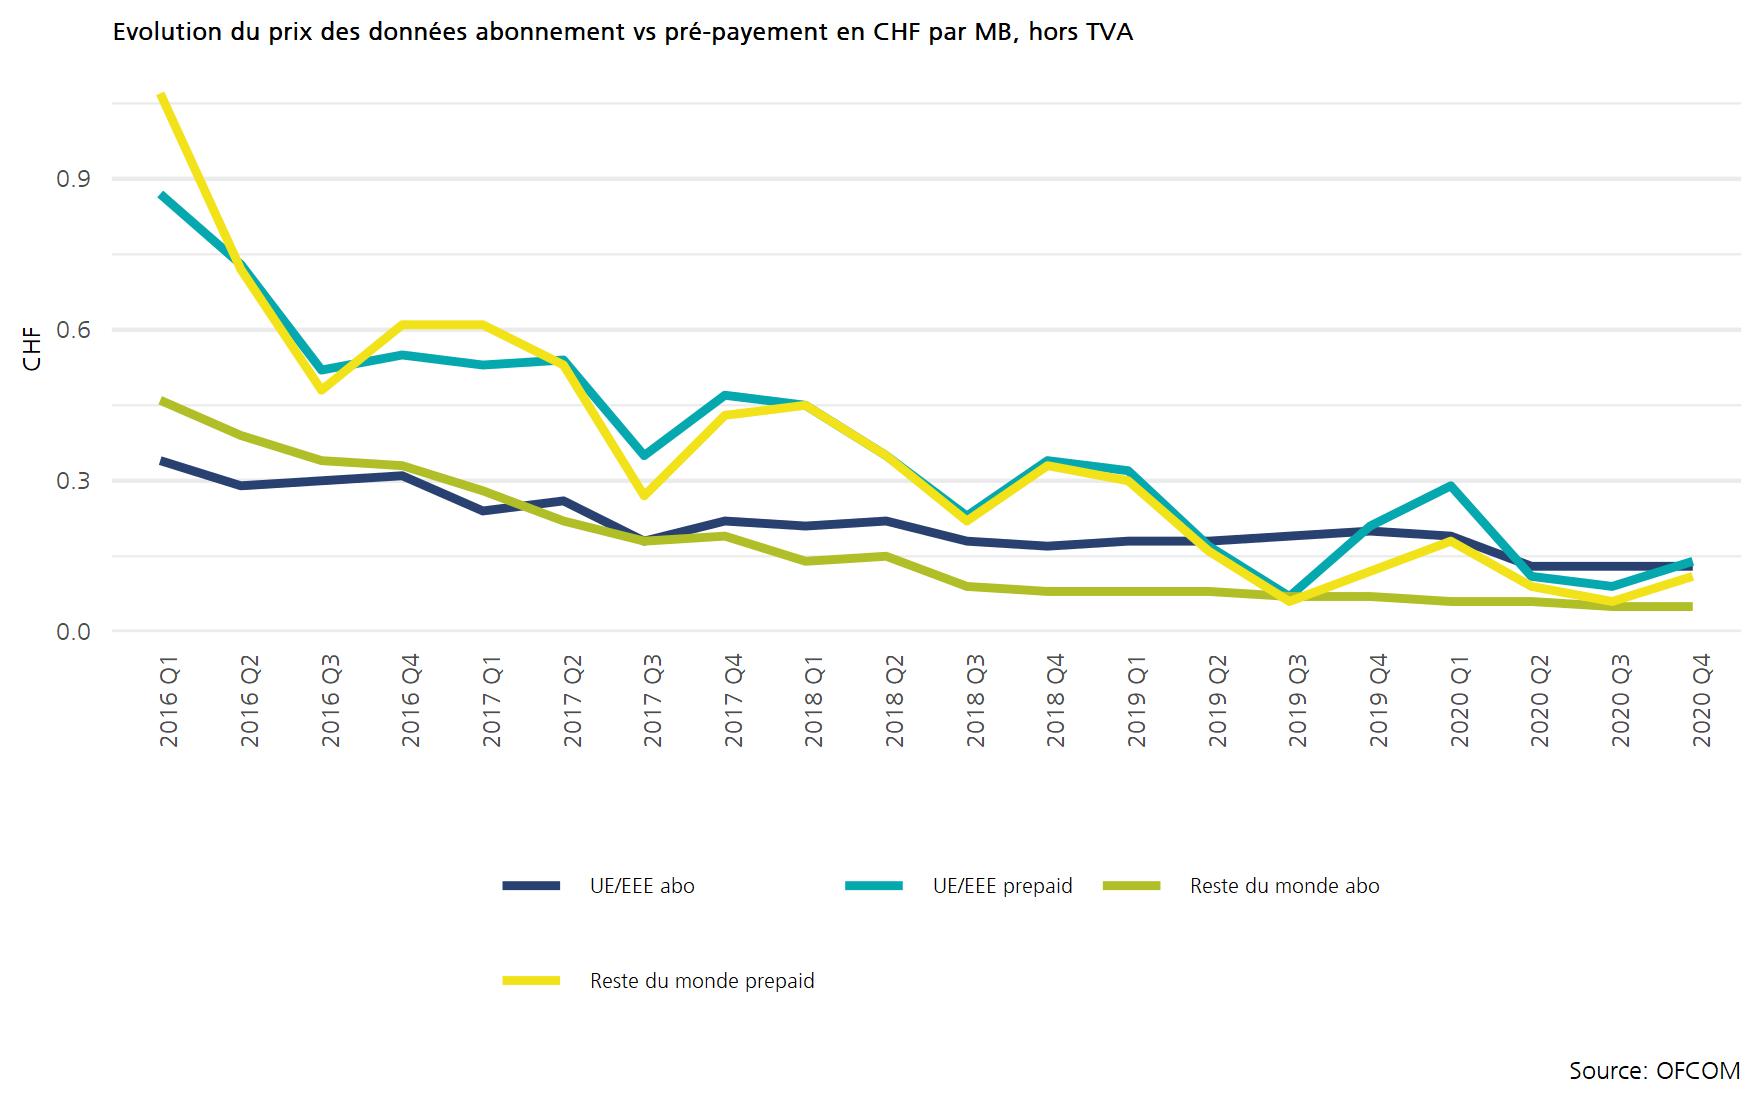 Evolution du prix des données abonnements vs pré-payment